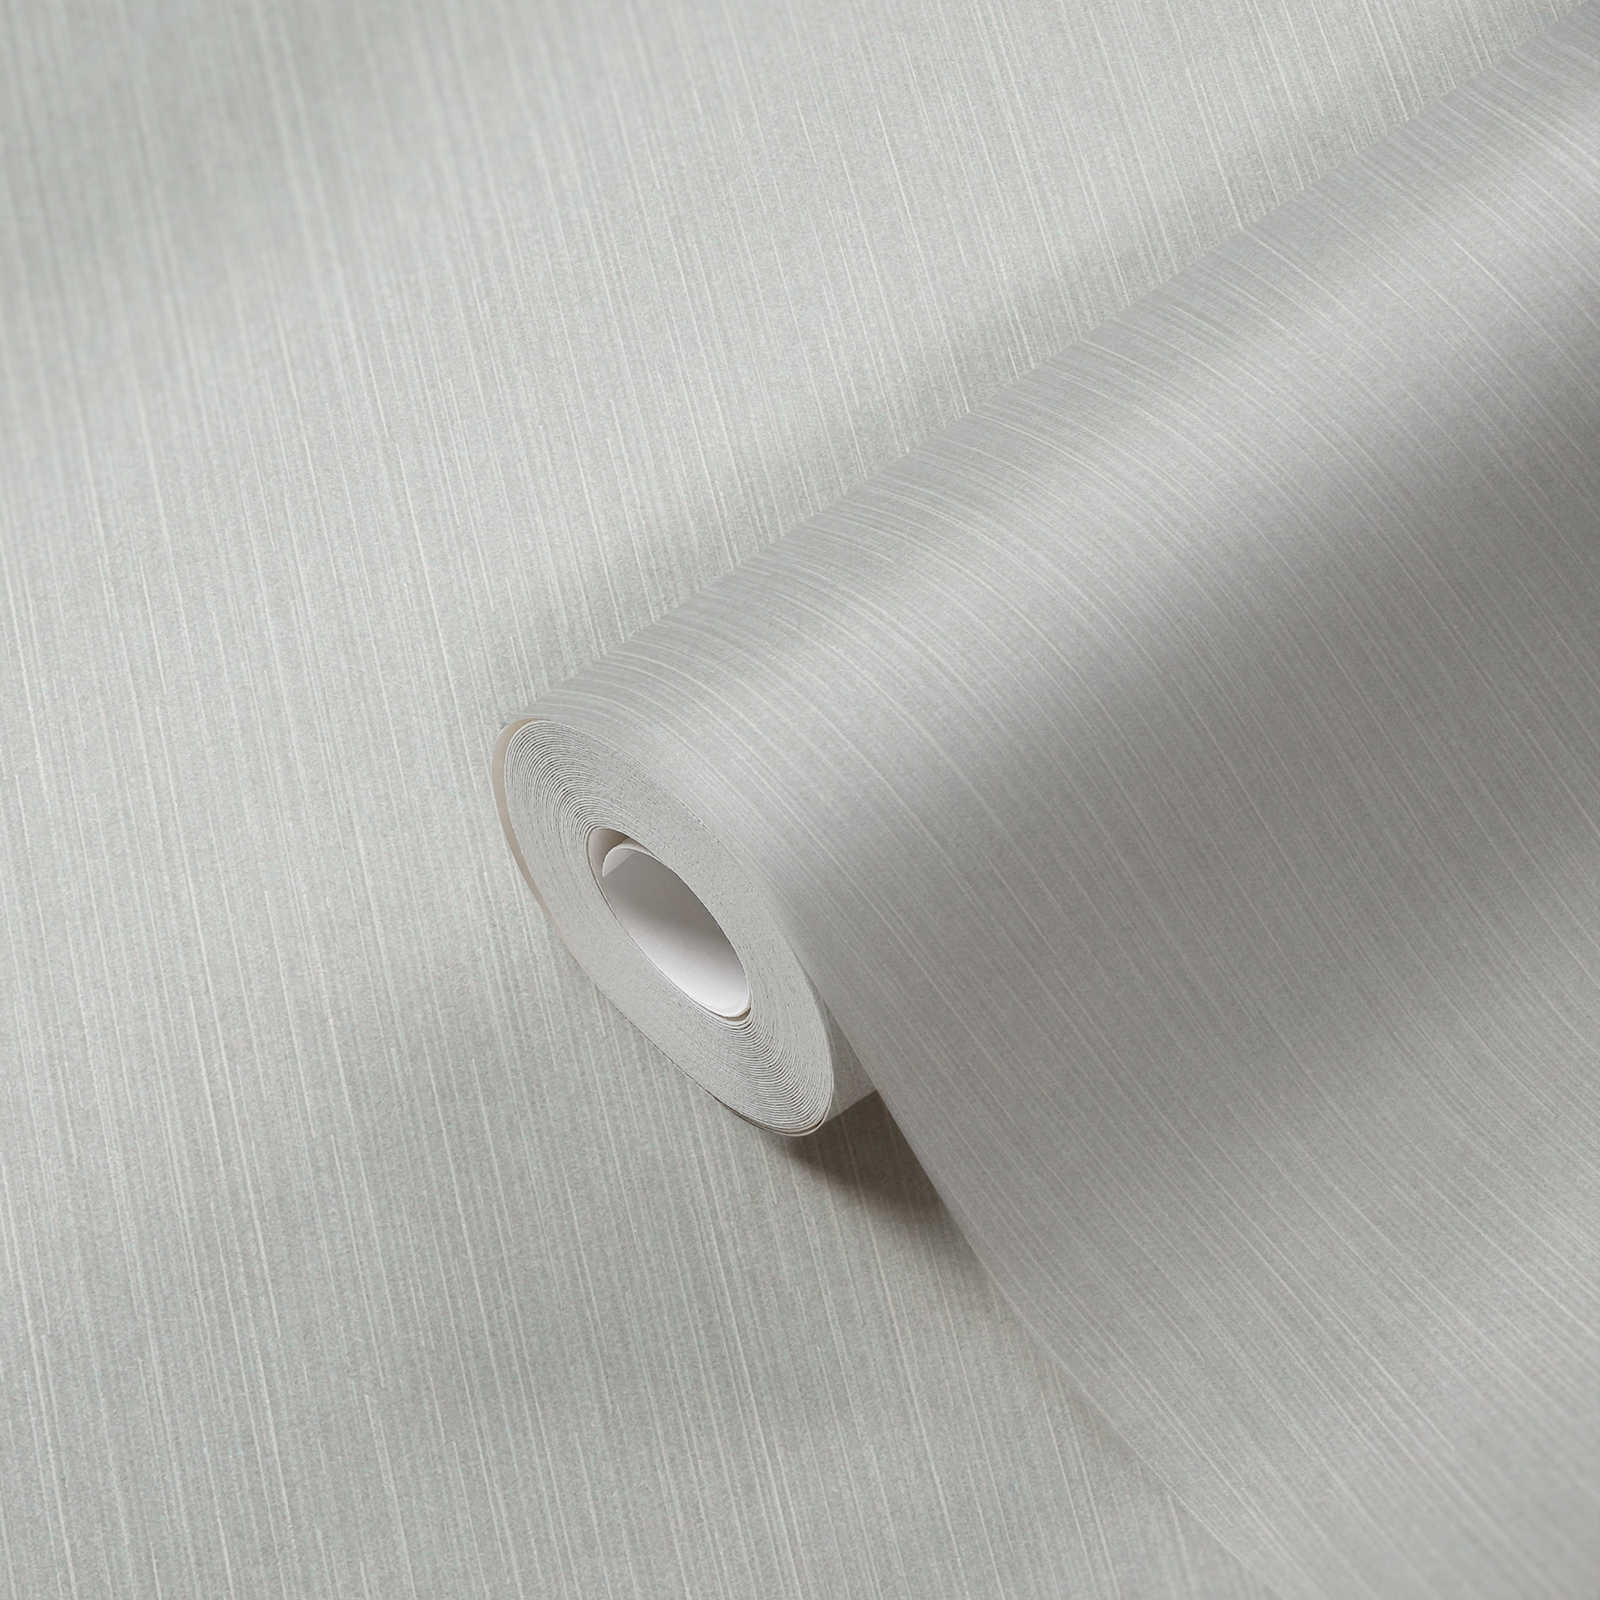             Gevoerd behang zilvergrijs met glanseffect - grijs
        